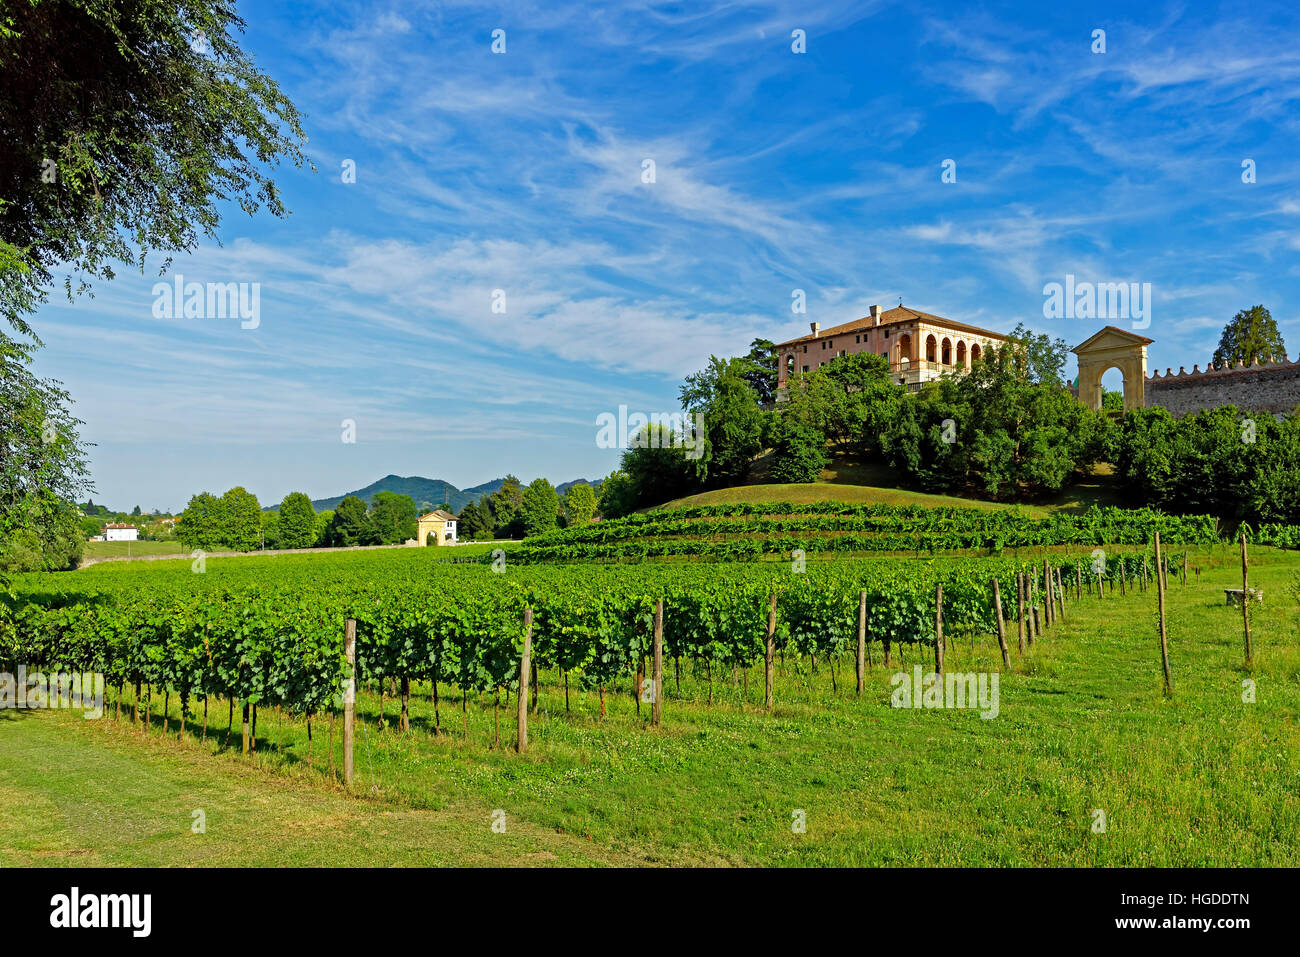 Torreglia, Colli Euganei, Euganean hills, villa dei Vescovi, scenery, landscape, vineyards Stock Photo